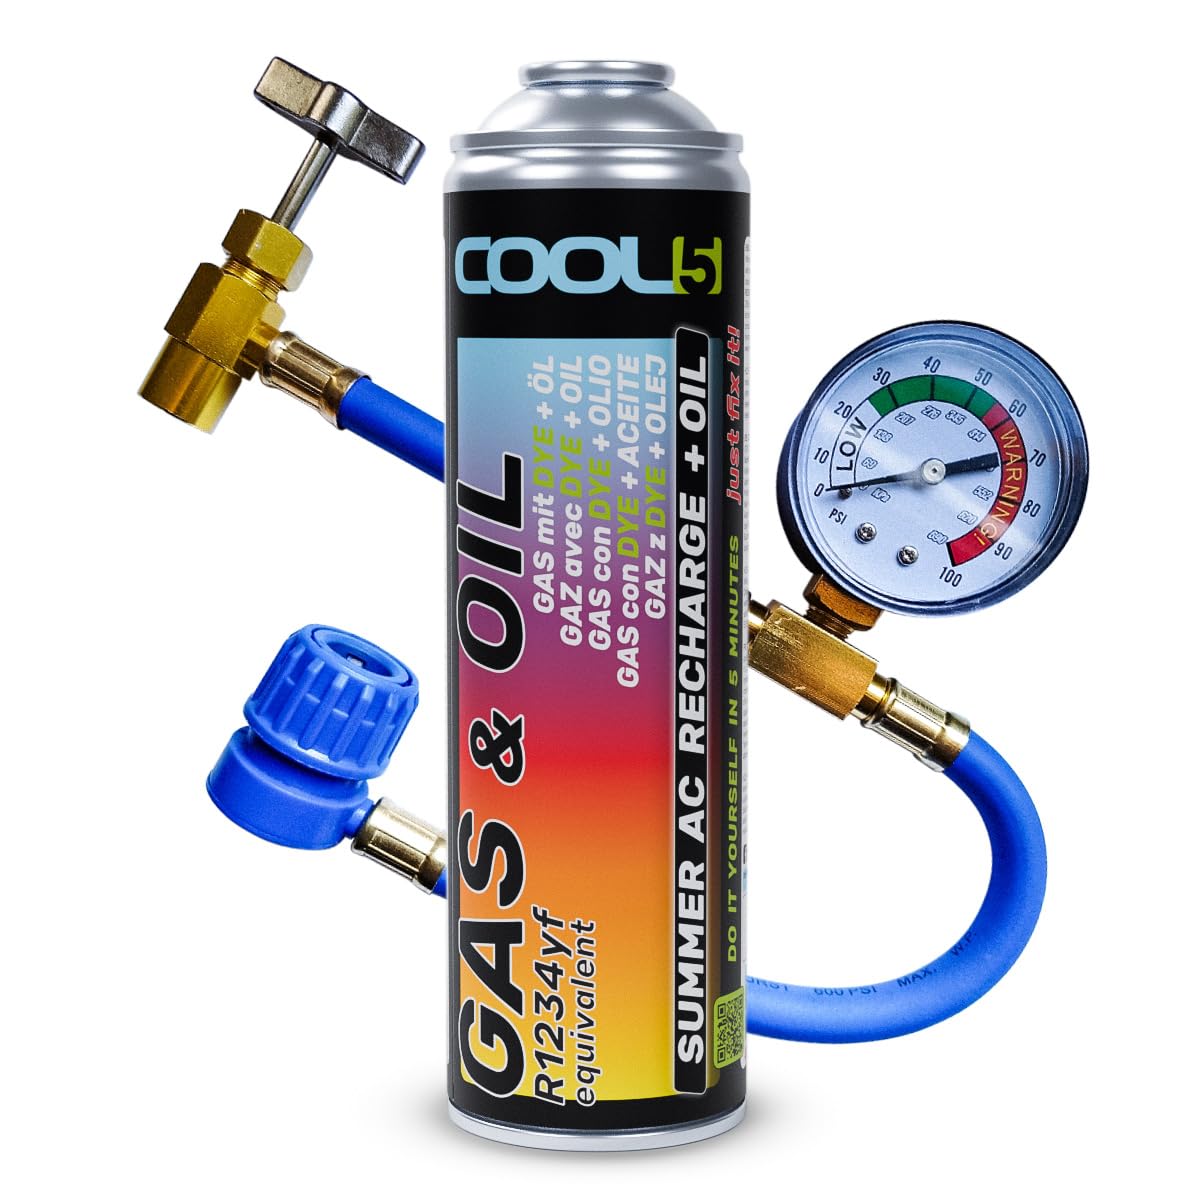 Cool5 Klimaanlagen-Reparaturset Sommer-Komplett-KIT - Kältemittel-Gas-Ersatz mit Öl (R1234yf-Gas-Ersatz) mit Messschlauch - für Fahrzeuge ab Baujahr 2017, 290g +70% Produkt von Cool5